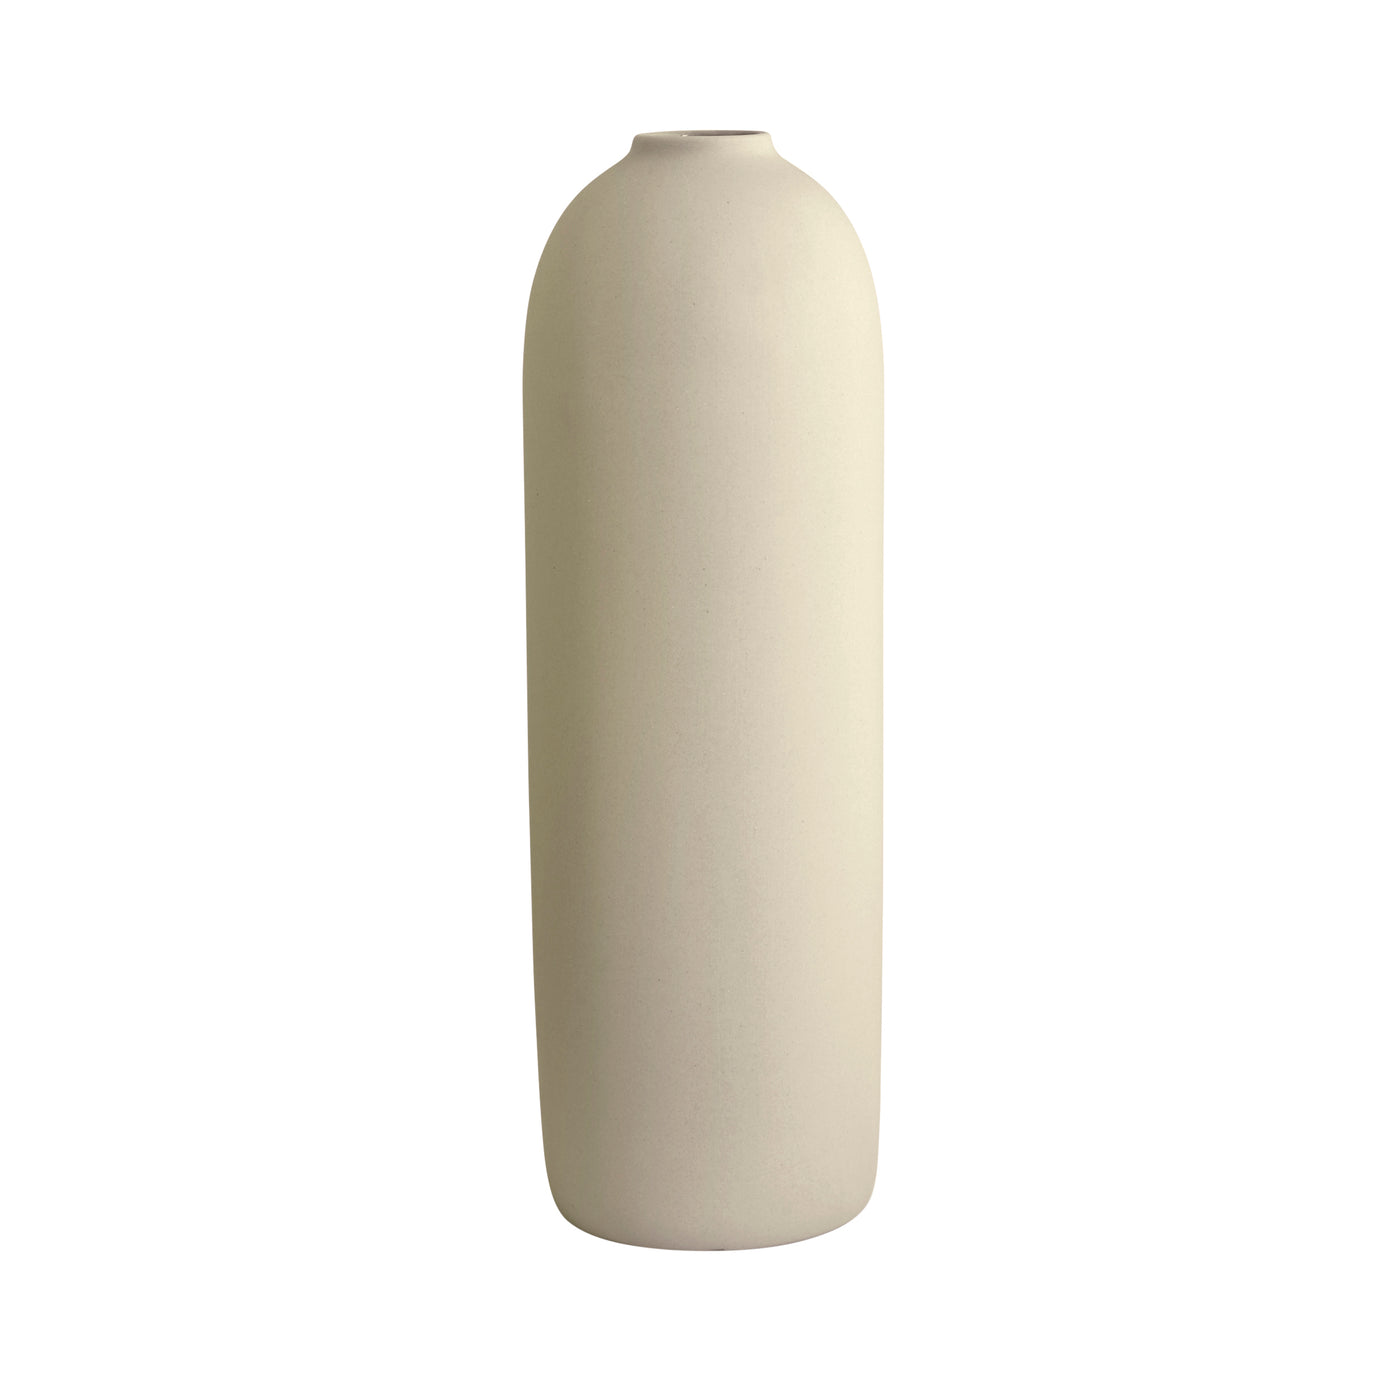 Cocoon Vase, Chalk White, Large